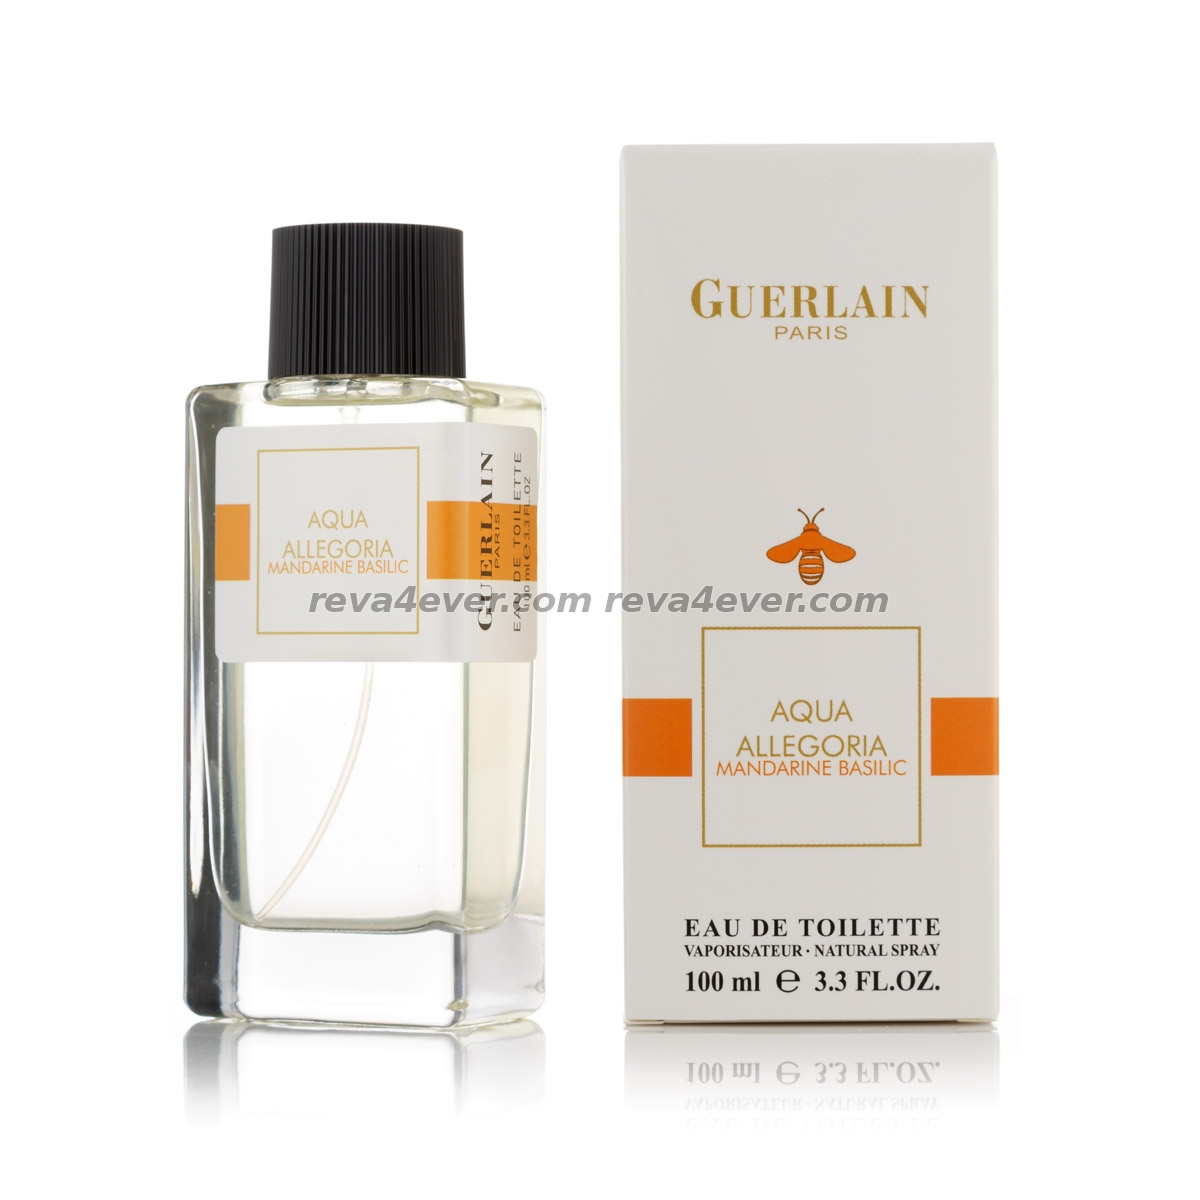 Guerlain Aqua Allegoria Mandarine Basilic edt 100ml Imperatrice style